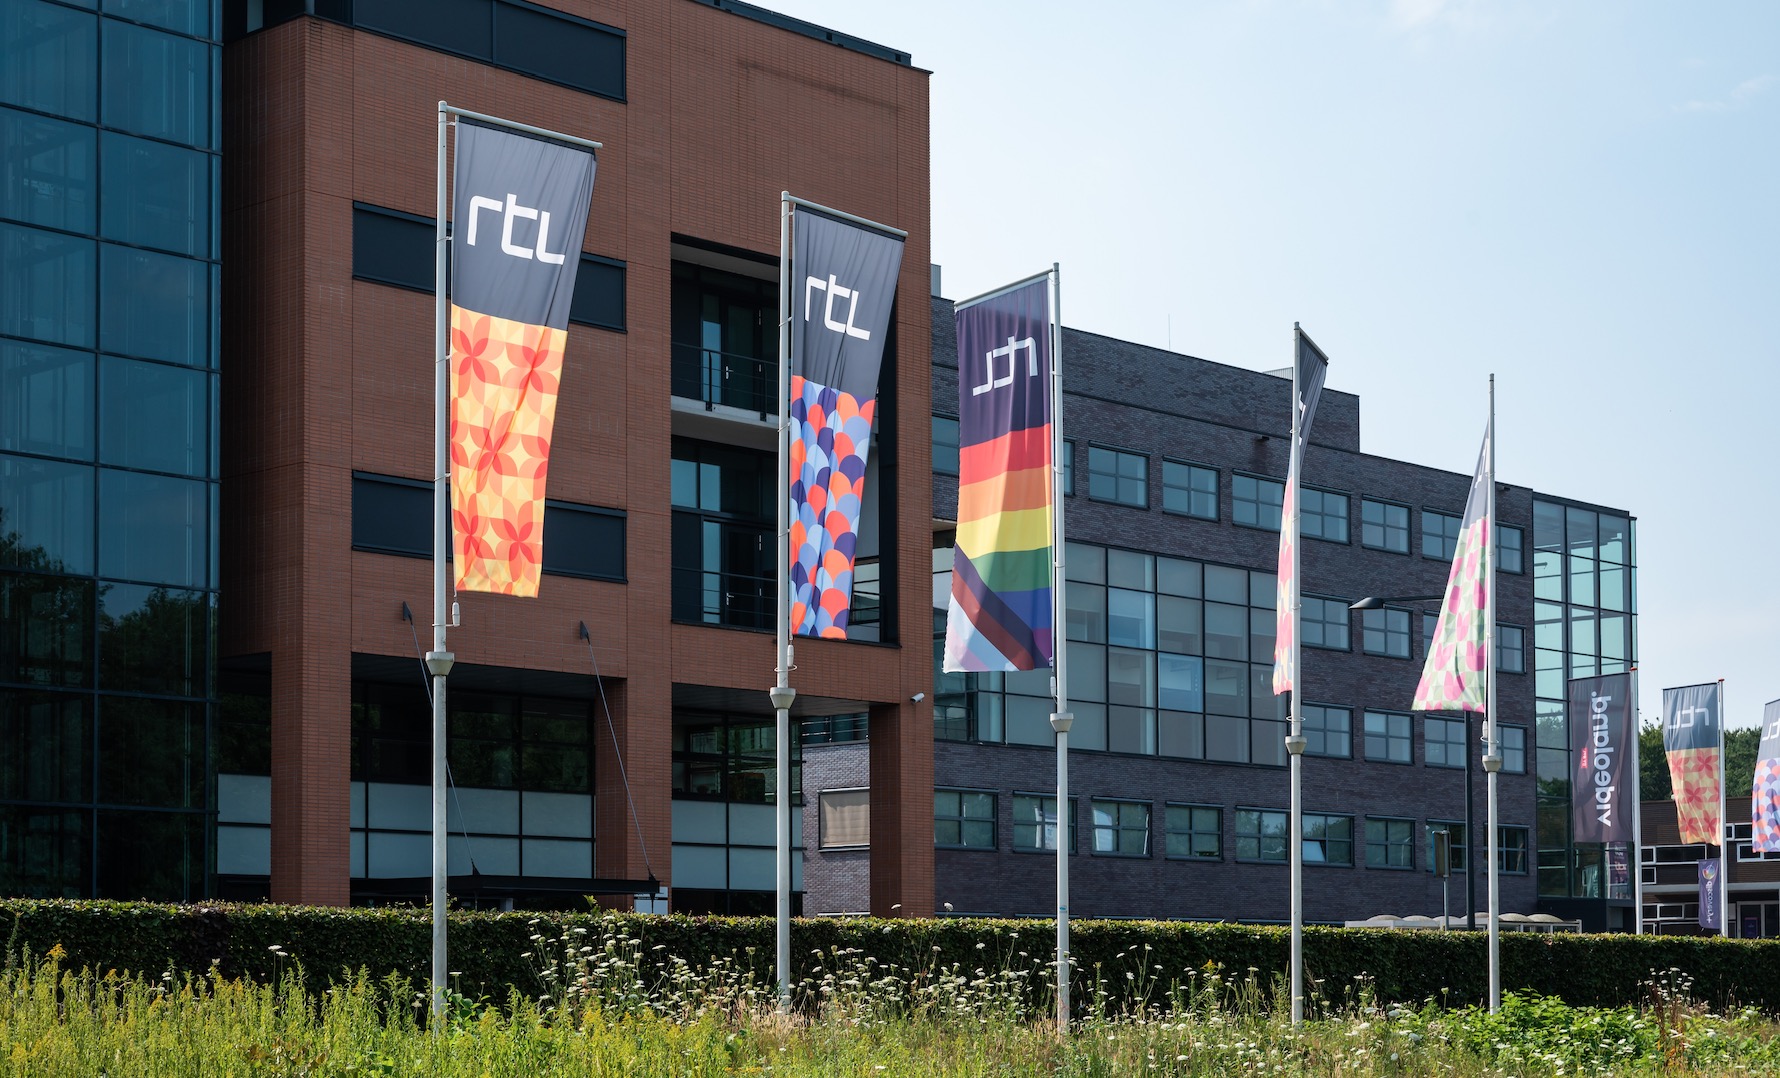 La fusion avortée de RTL et Talpa aux Pays-Bas pourrait-elle profiter à DPG?  